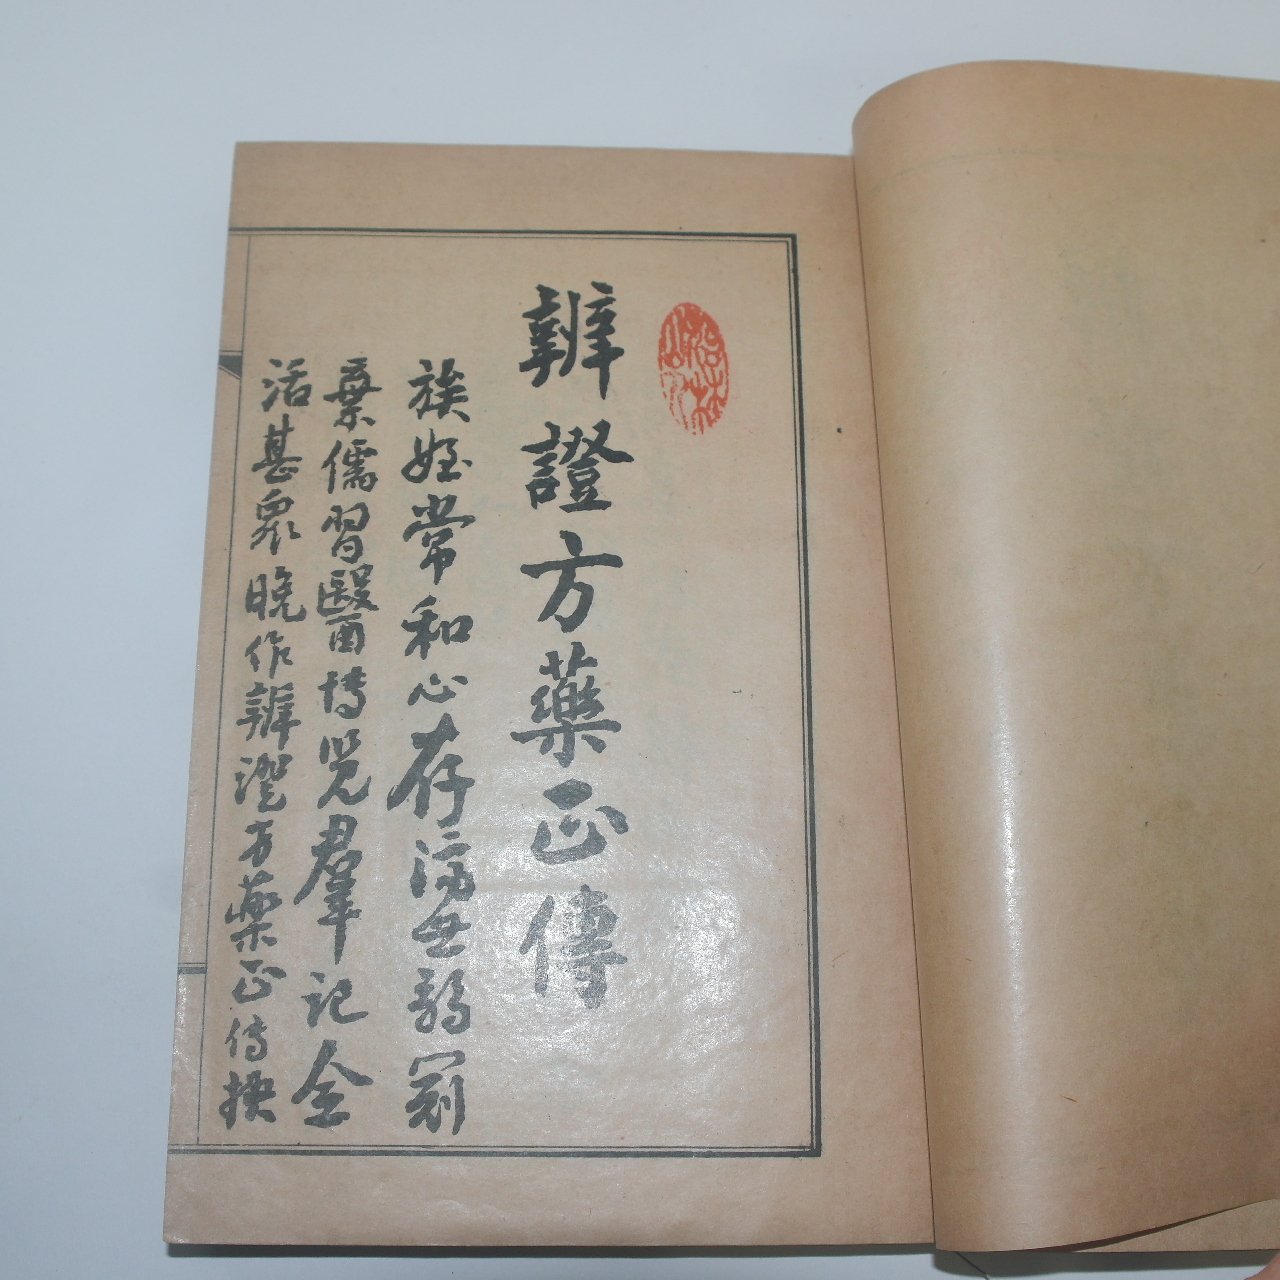 1950년(단기4283년) 의서 이상화(李常和) 변증방약정전(辨證方藥正傳)1책완질